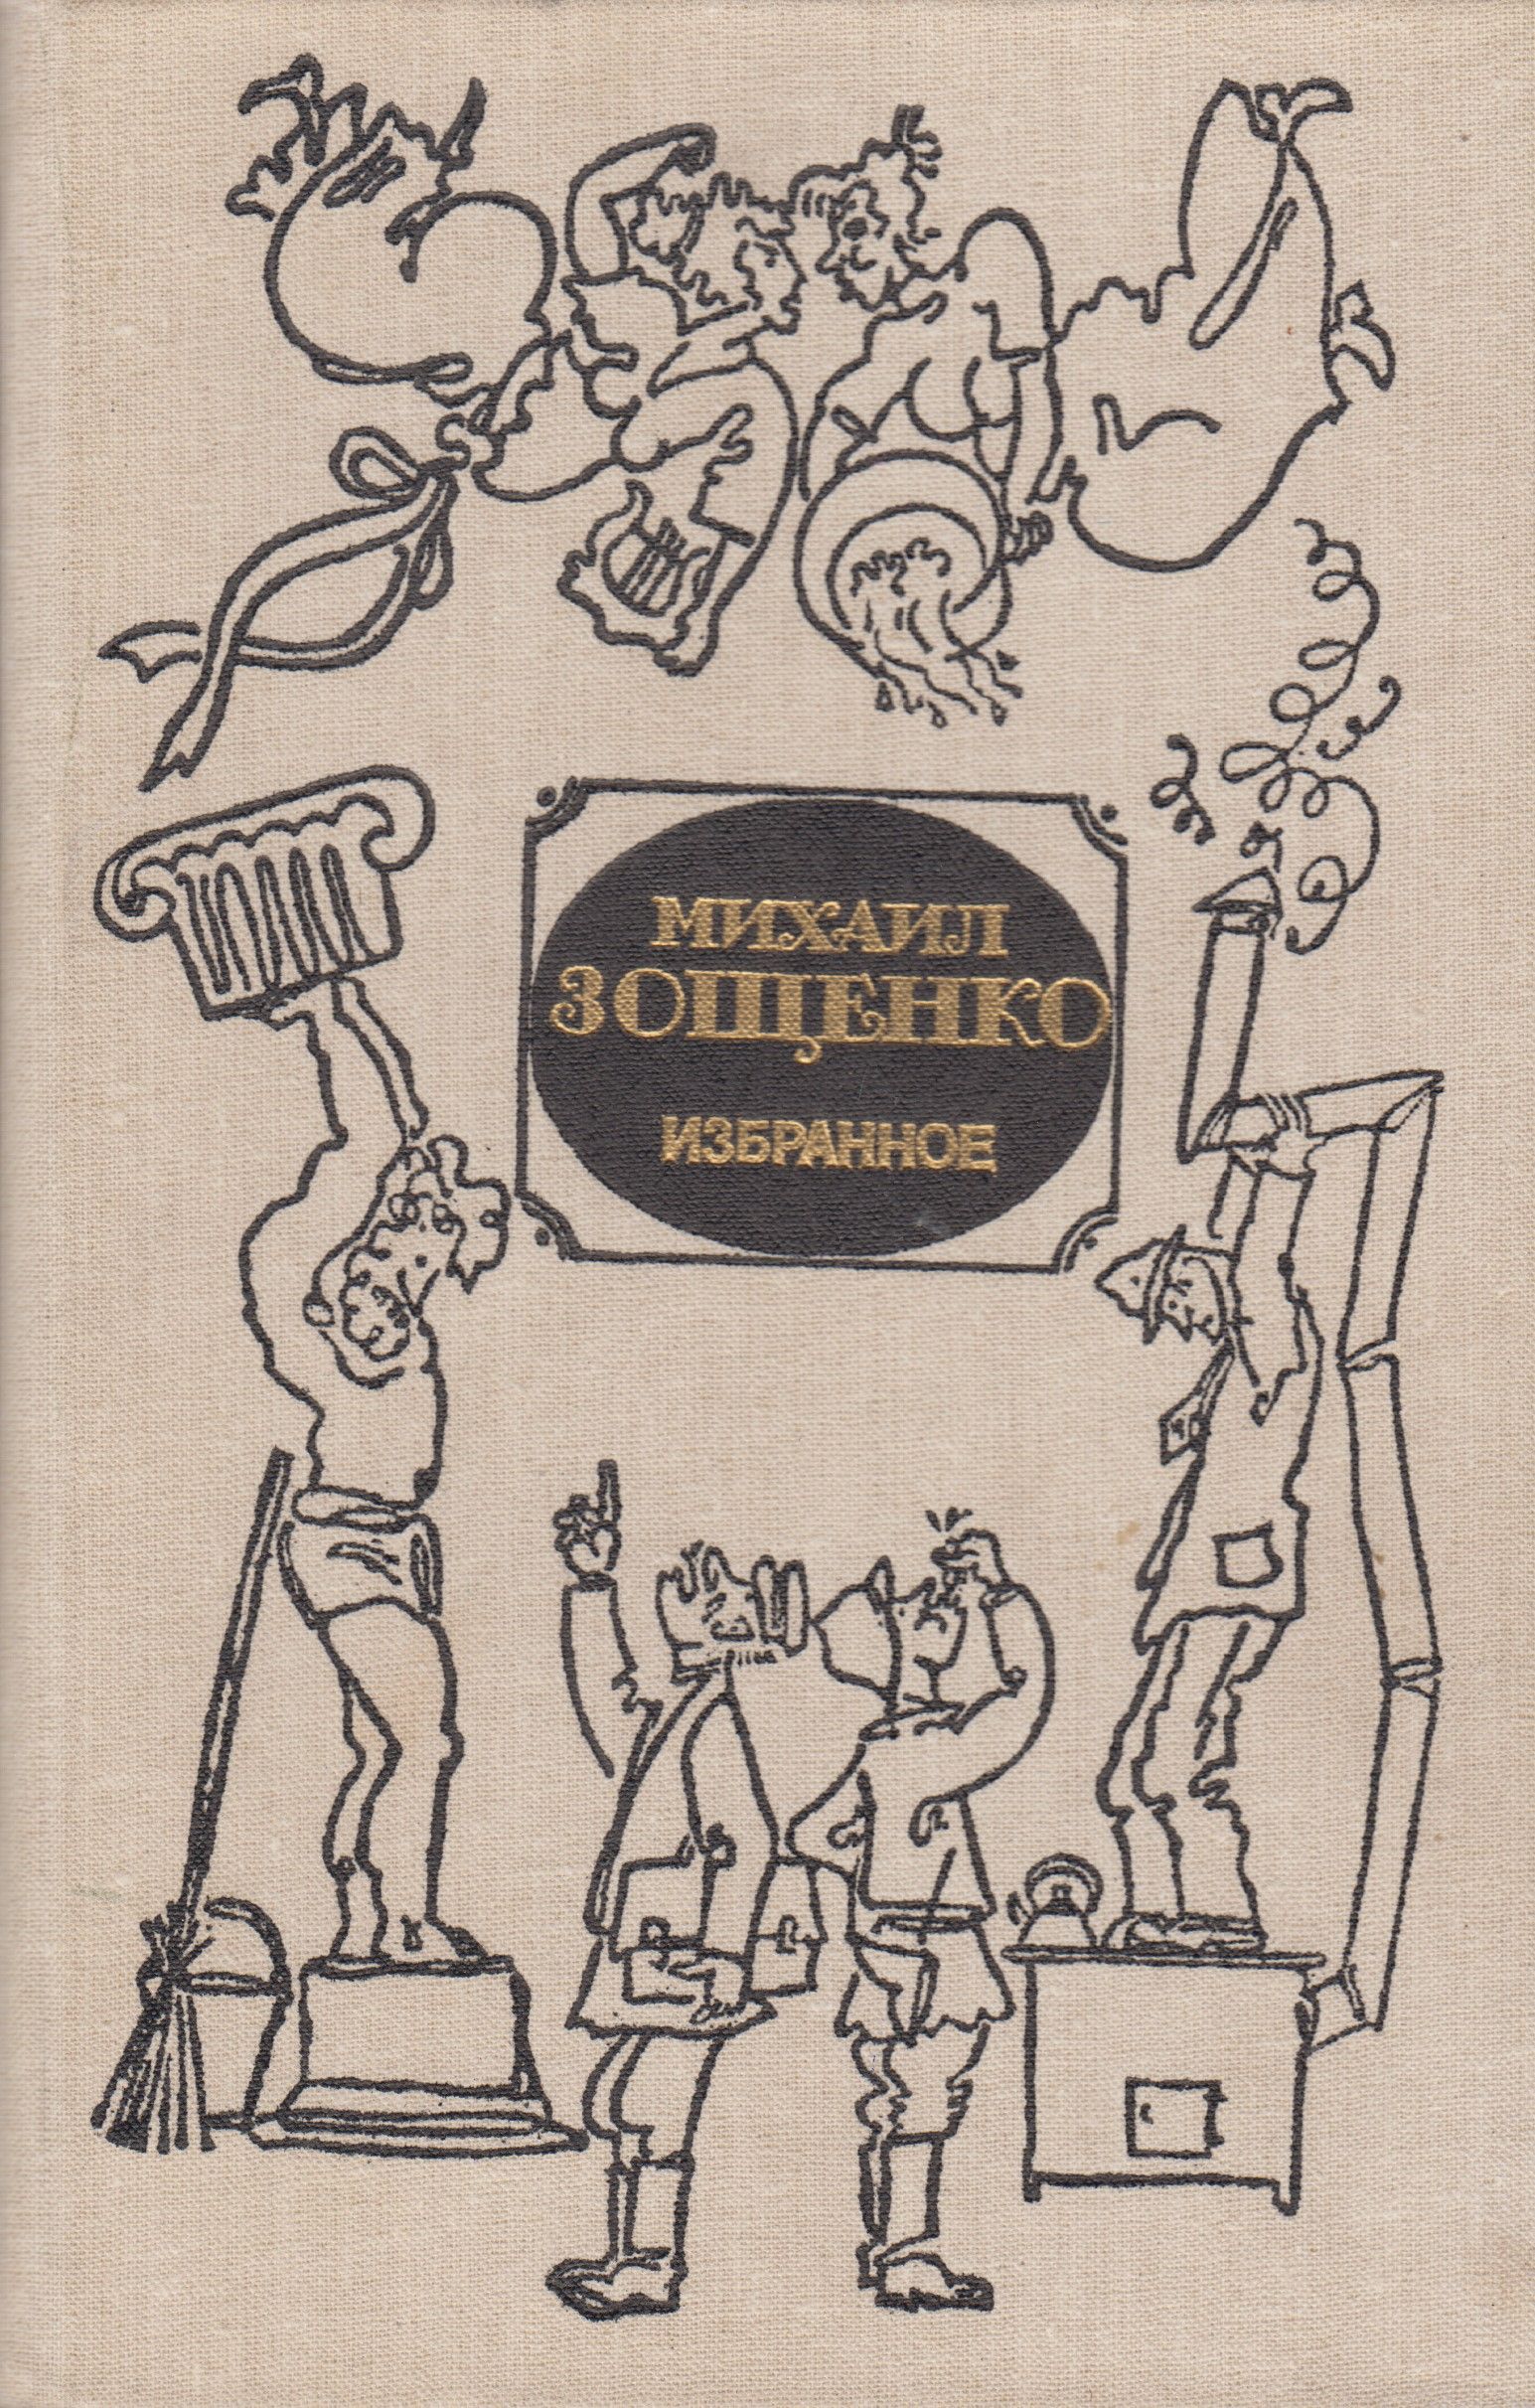 Авторы юмористических книг. Книга избранное (Зощенко м.). Зощенко избранное 1981.